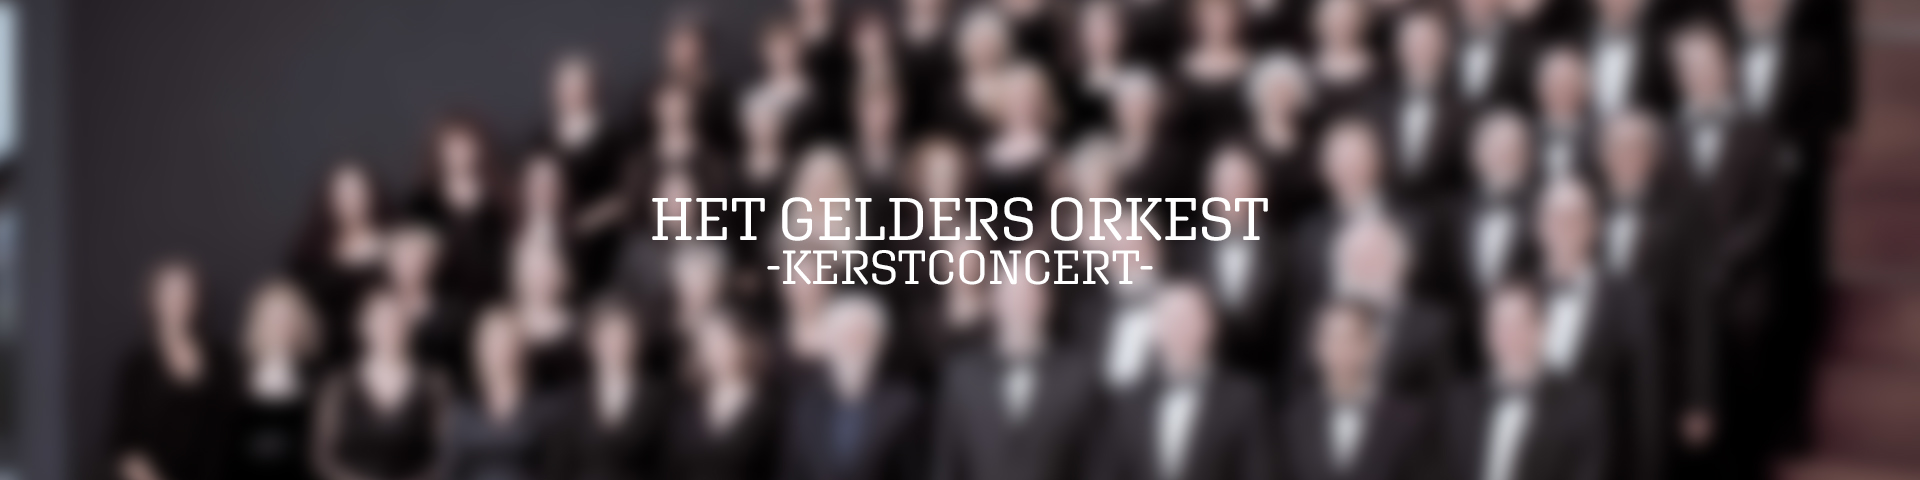 Het Gelders Orkest - Kerstconcert Beethoven Negen